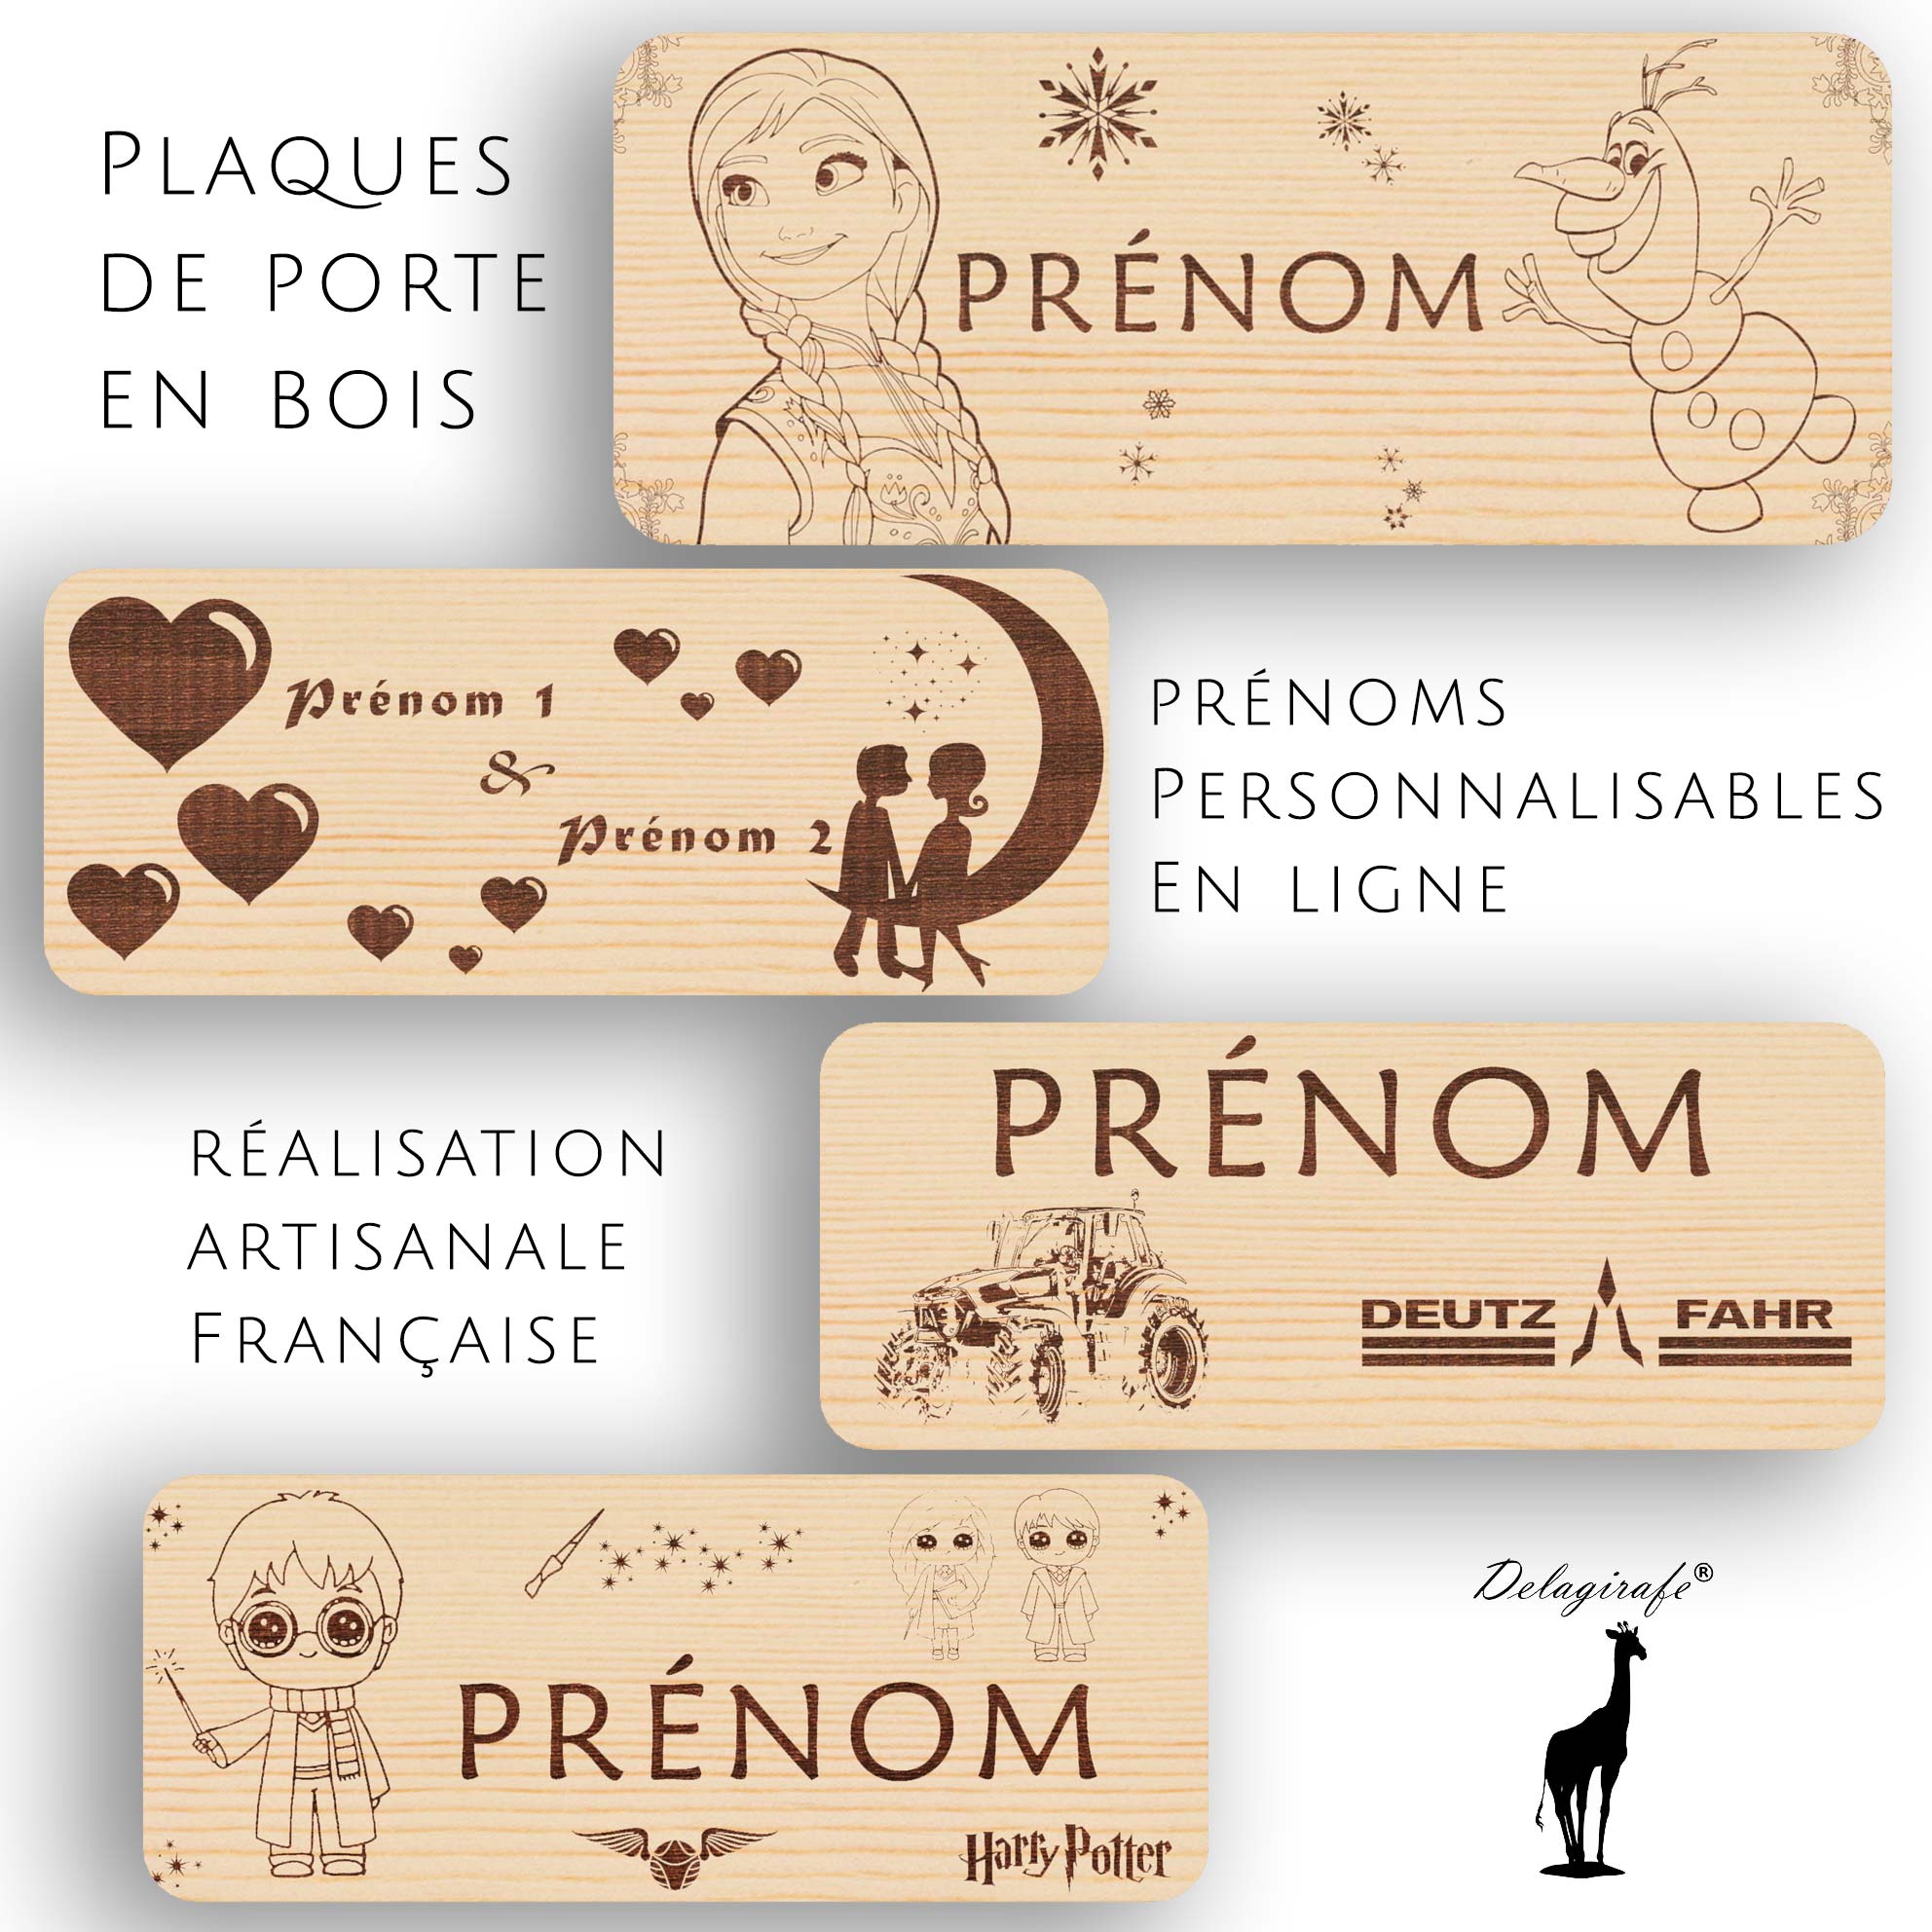 Plaques de porte en bois prénoms Personnalisables En ligne réalisation artisanale Française